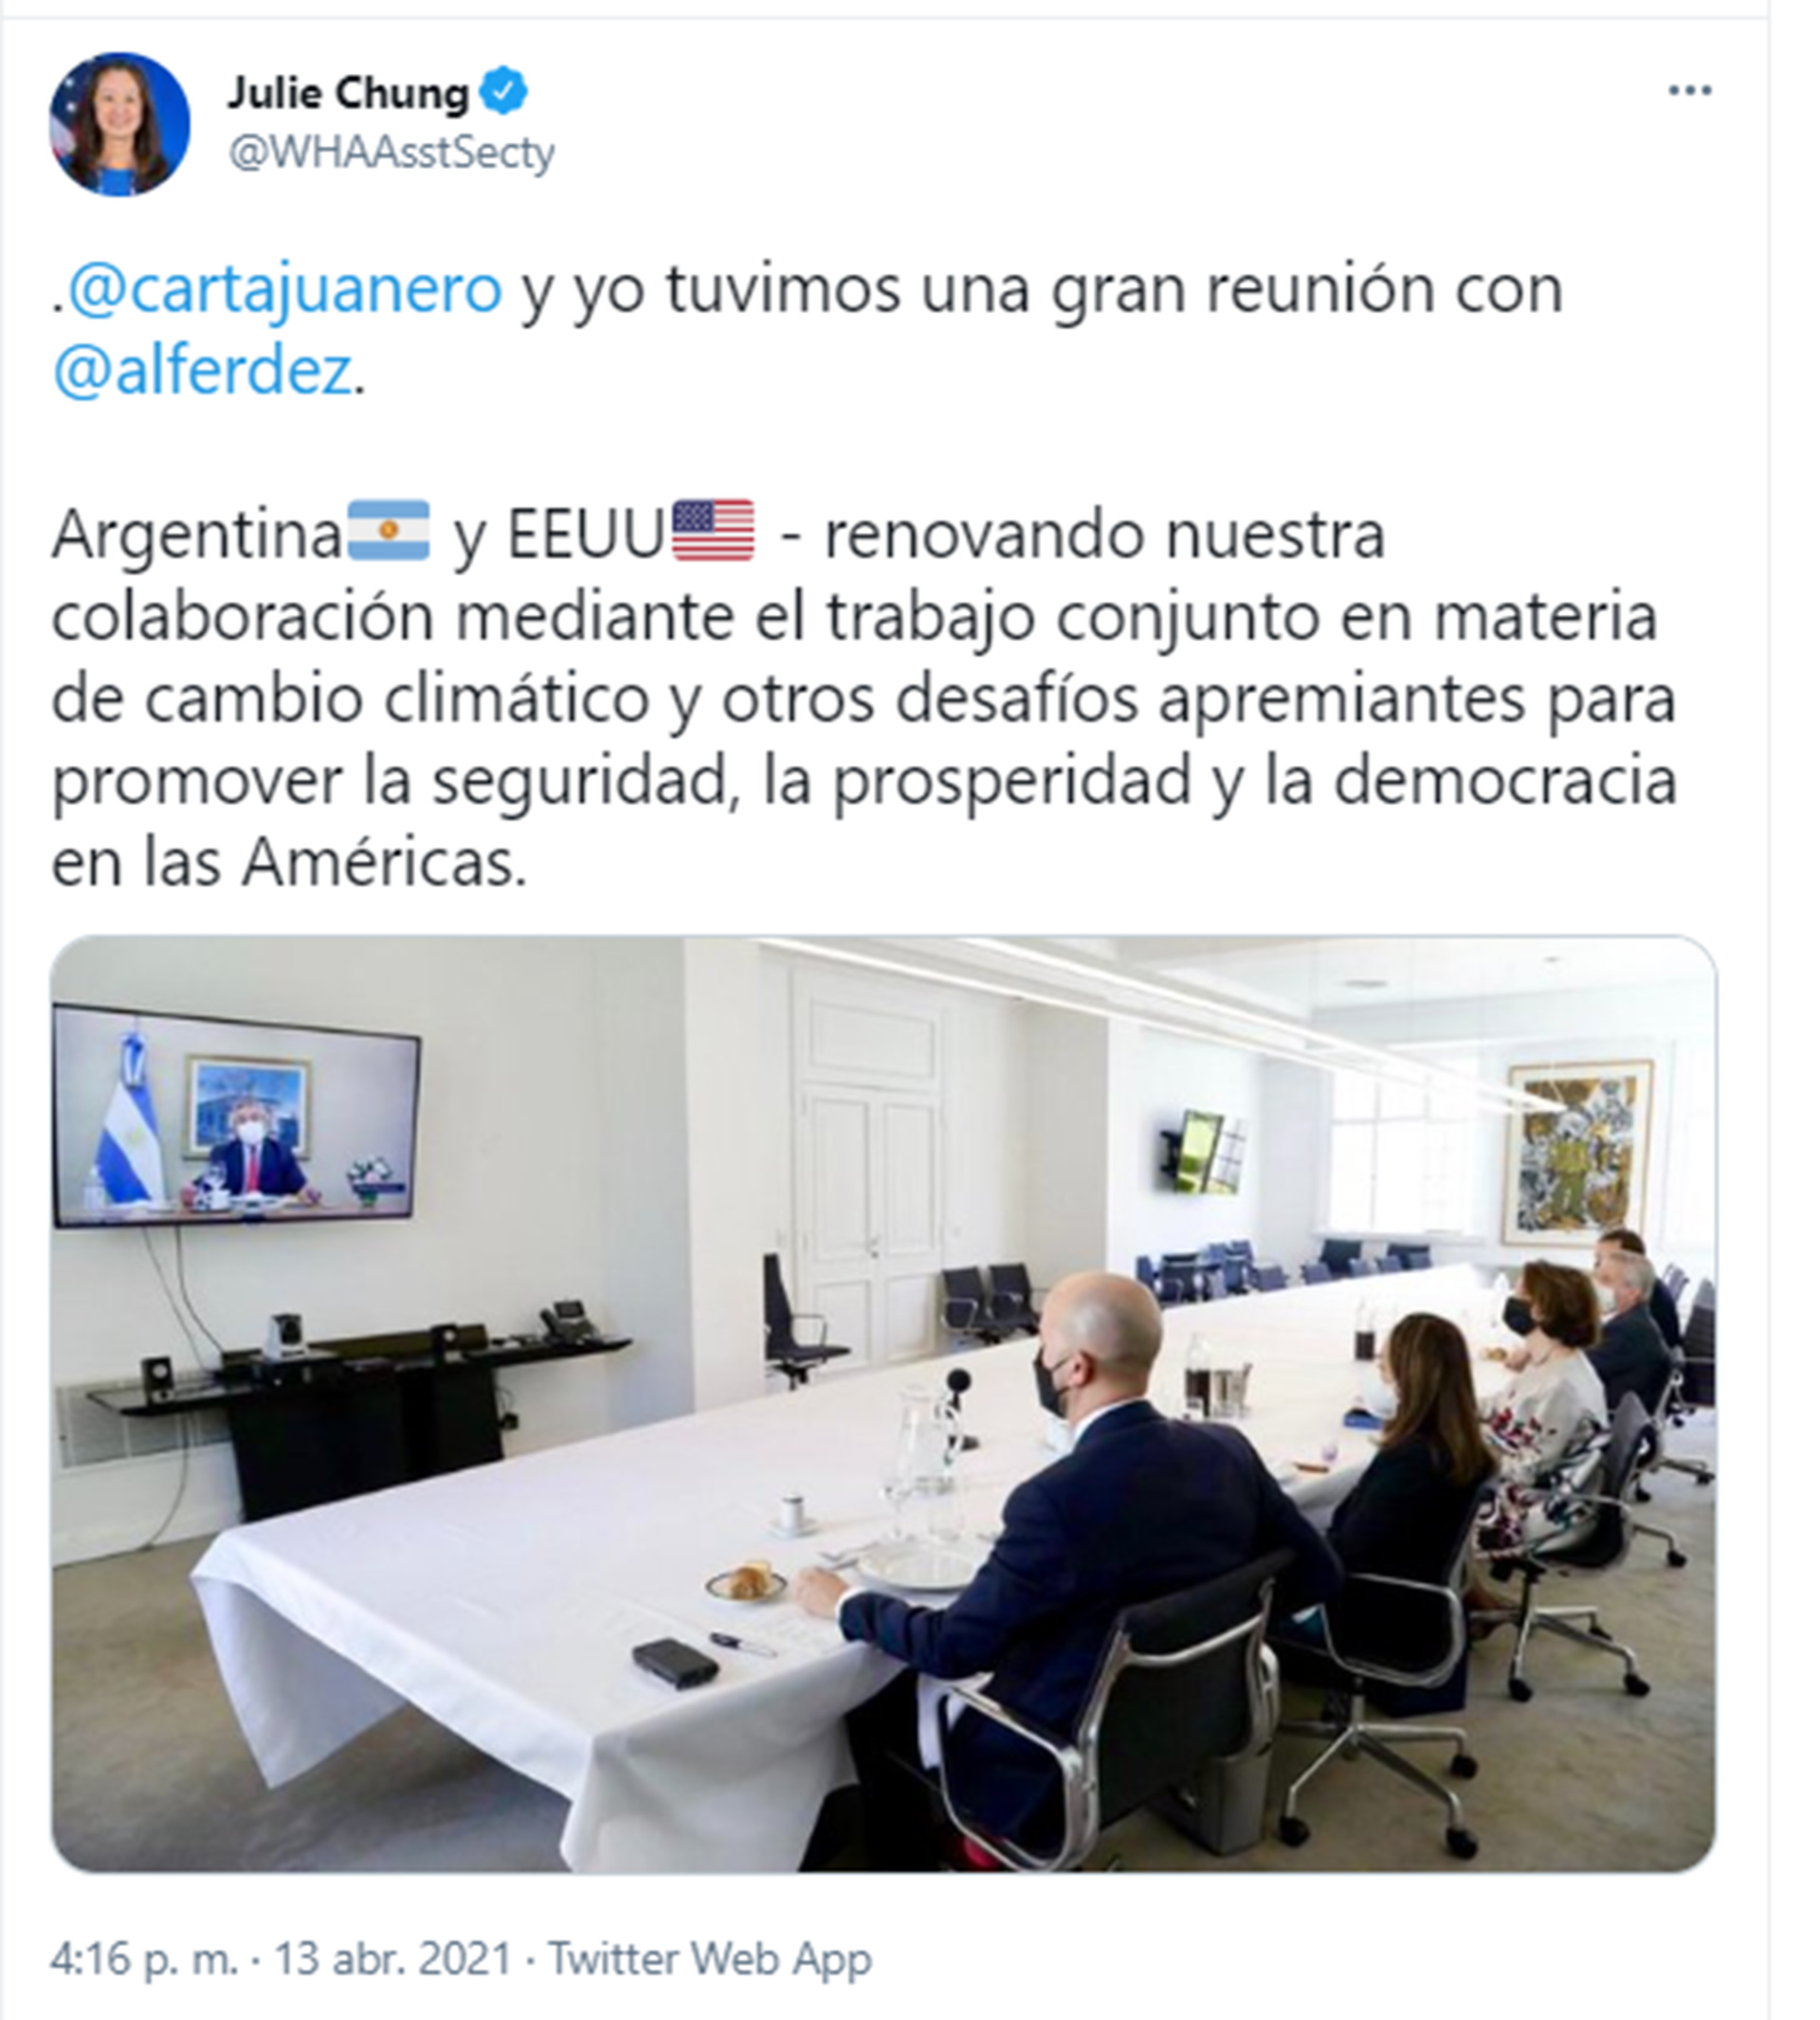 Tuit escrito por la subsecretaria del Departamento de Estado, Julie Chung, en su cuenta oficial de Twitter, tras el almuerzo con Alberto Fernández en Olivos 